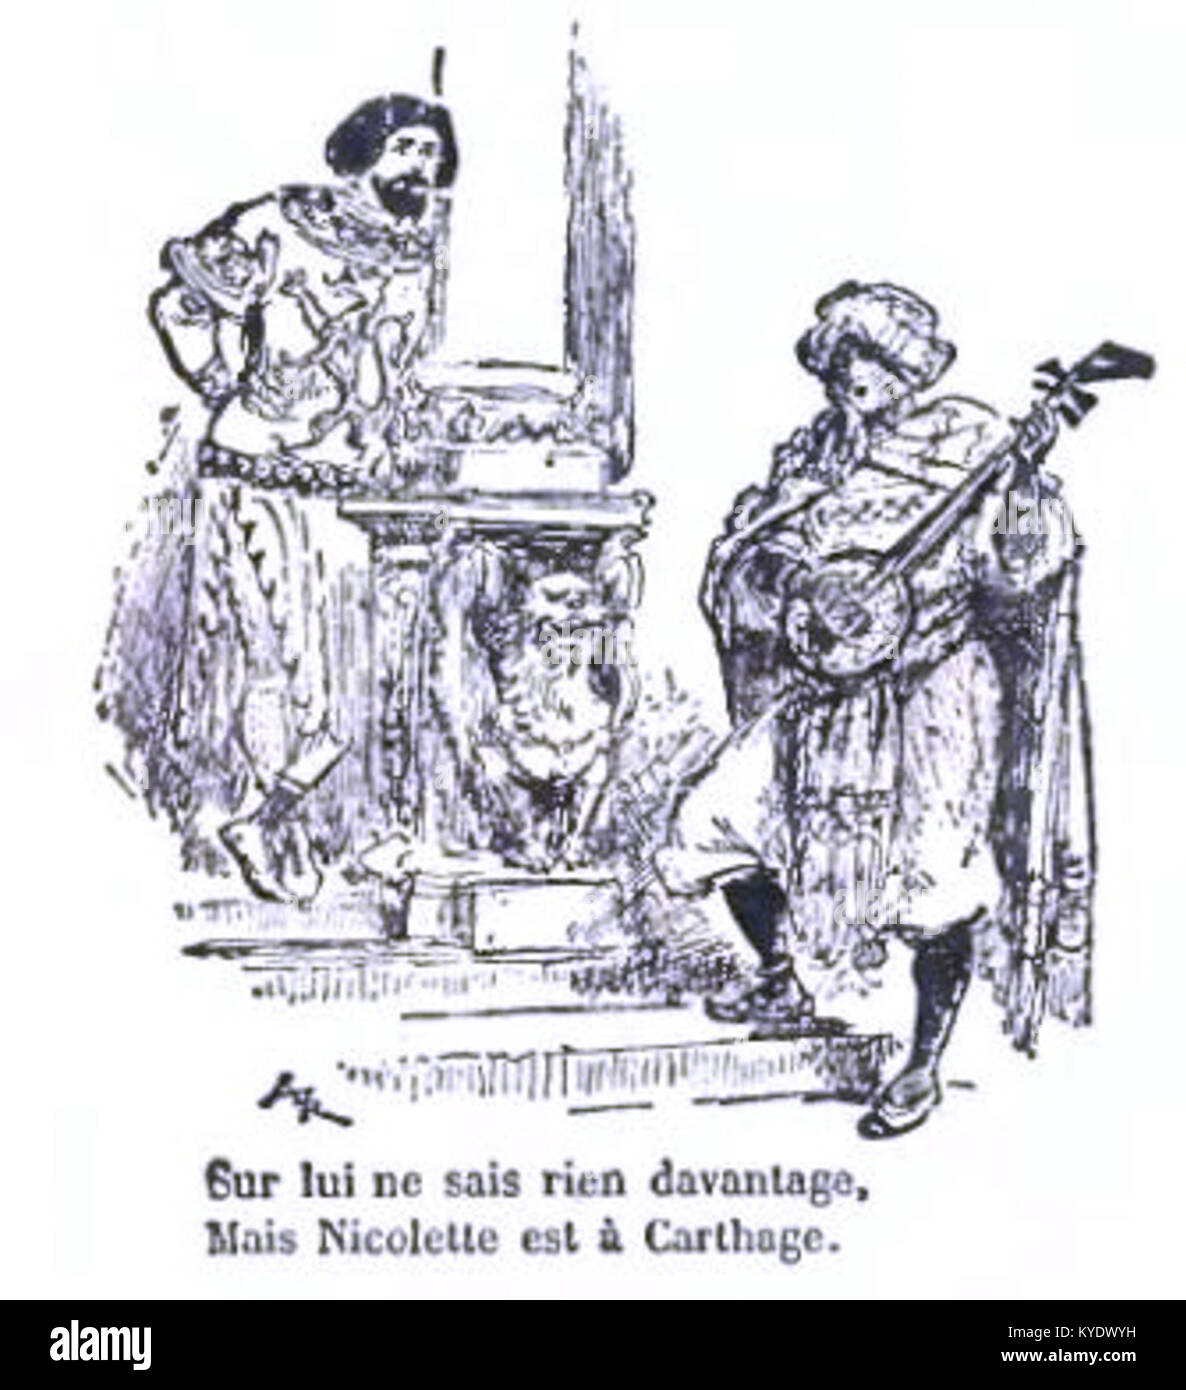 Tarsot - Fabliaux et Contes du Moyen Âge 1913-127 Stock Photo